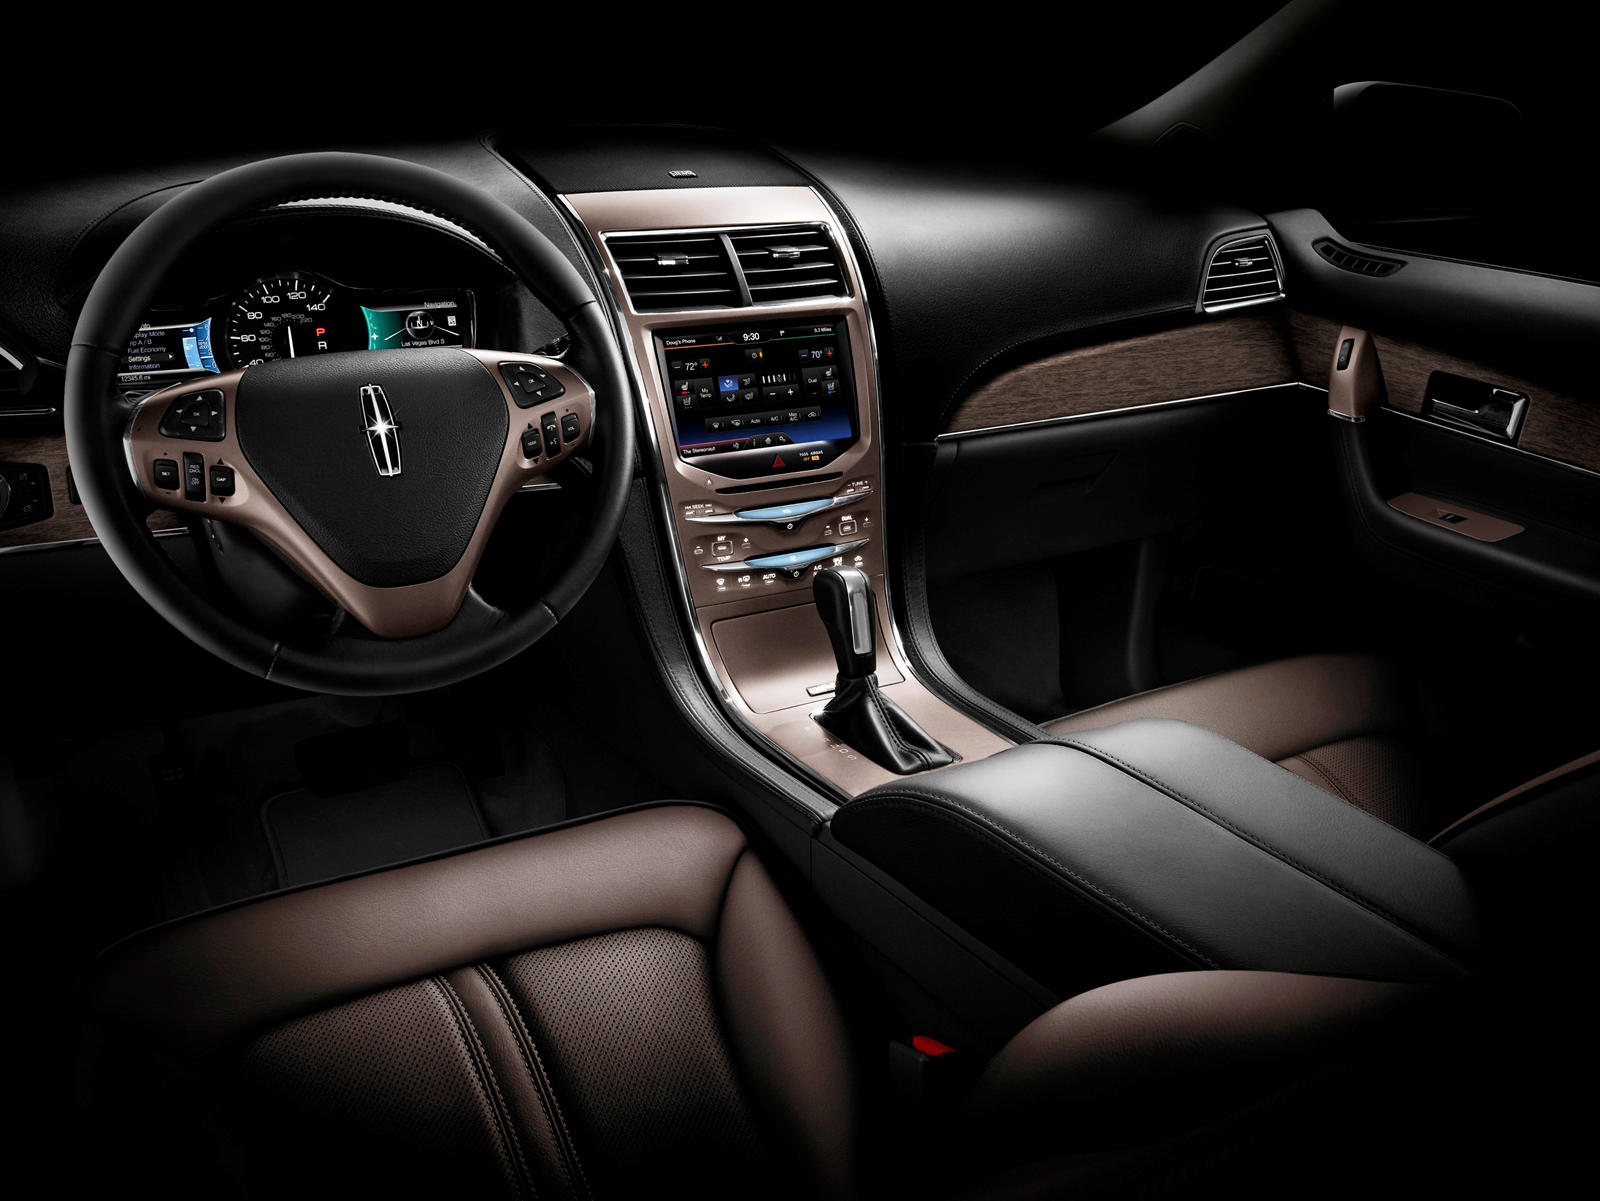 2013 Lincoln MKX Interior Photos | CarBuzz